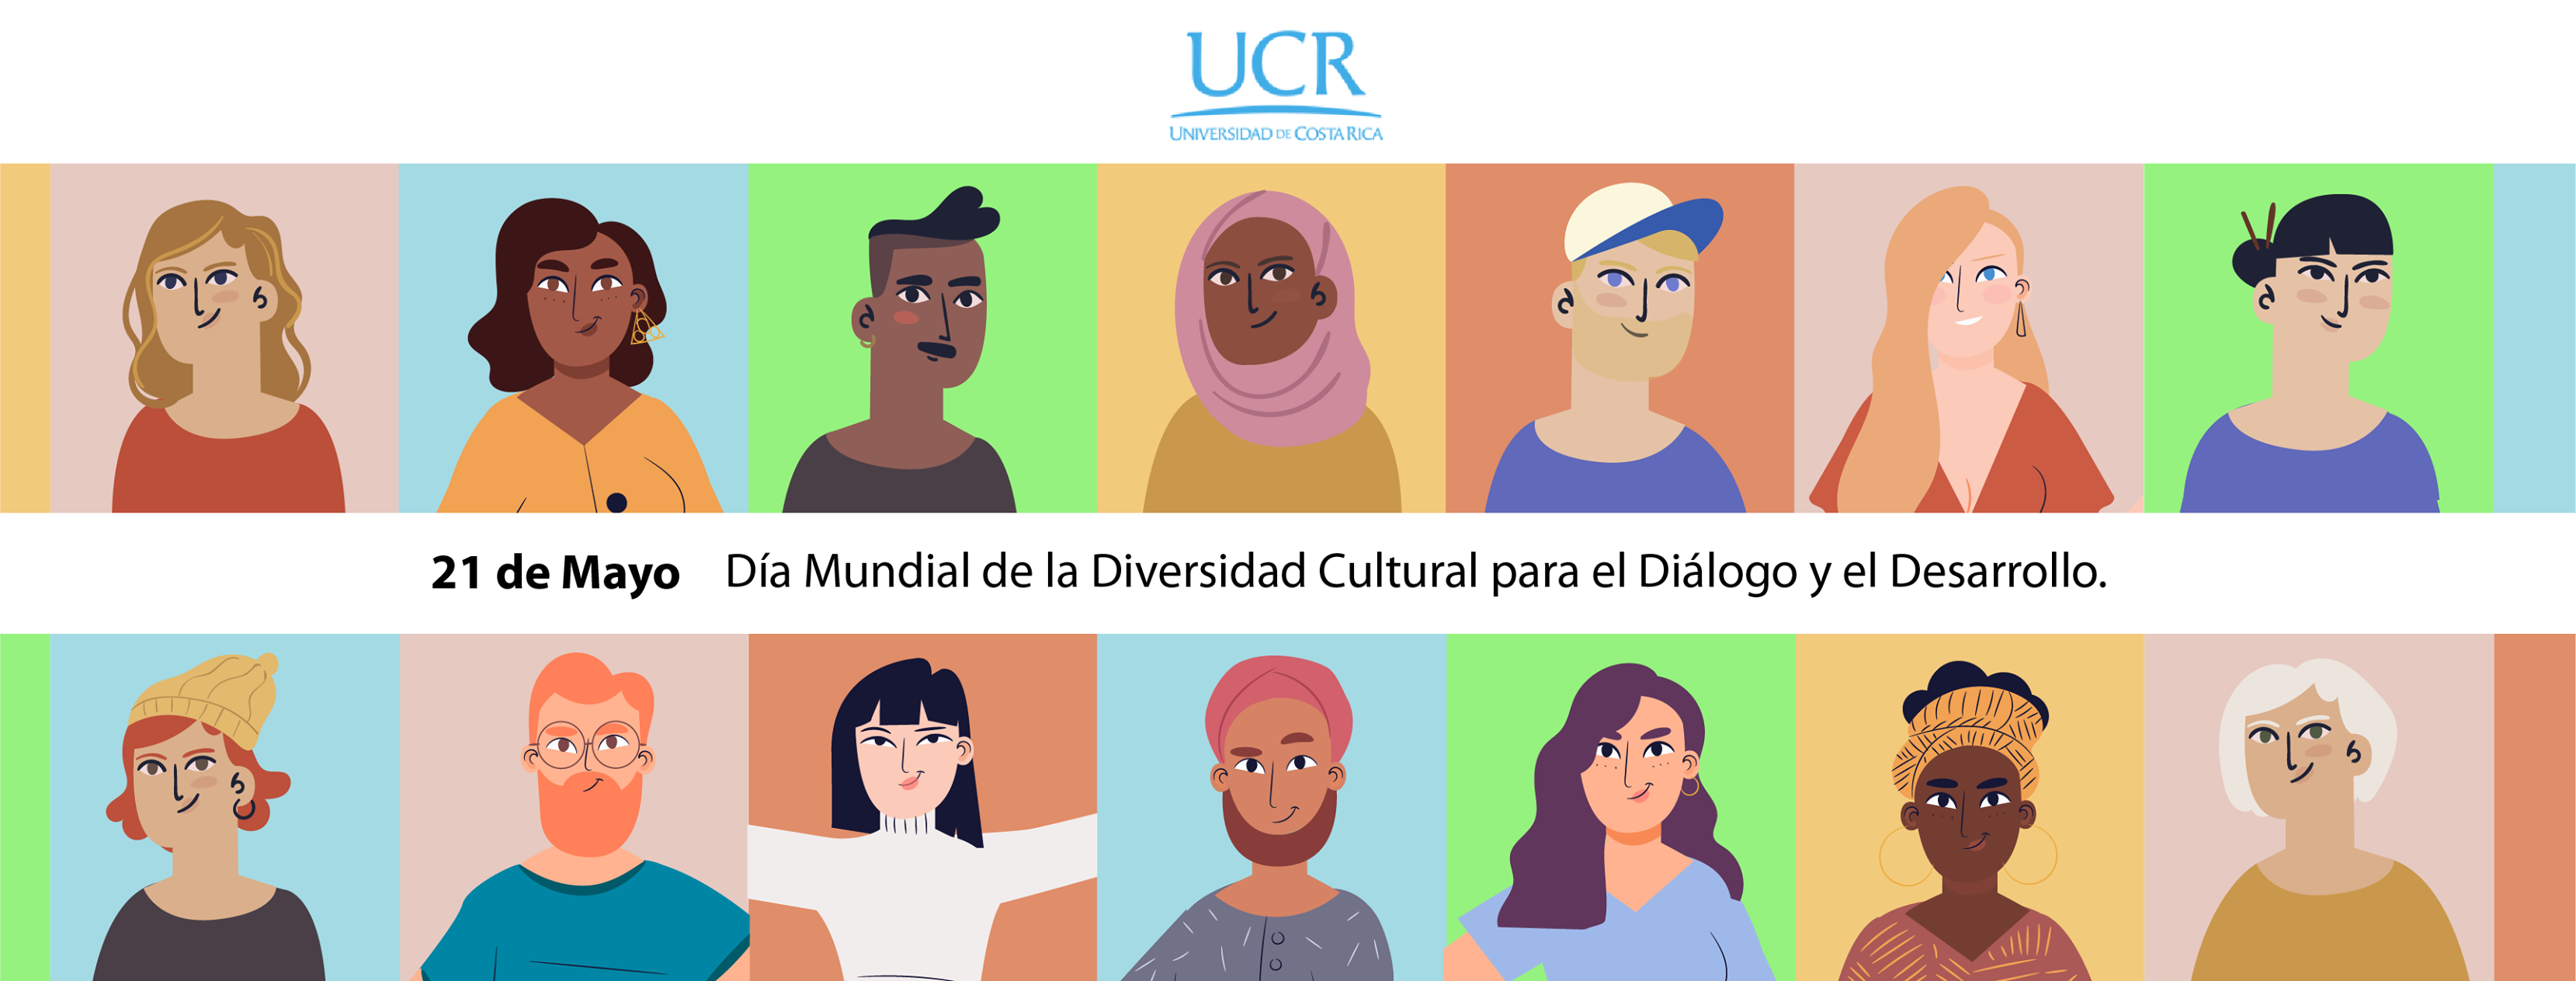 21 de mayo Día mundial de la diversidad cultural para el diálogo y el desarrollo